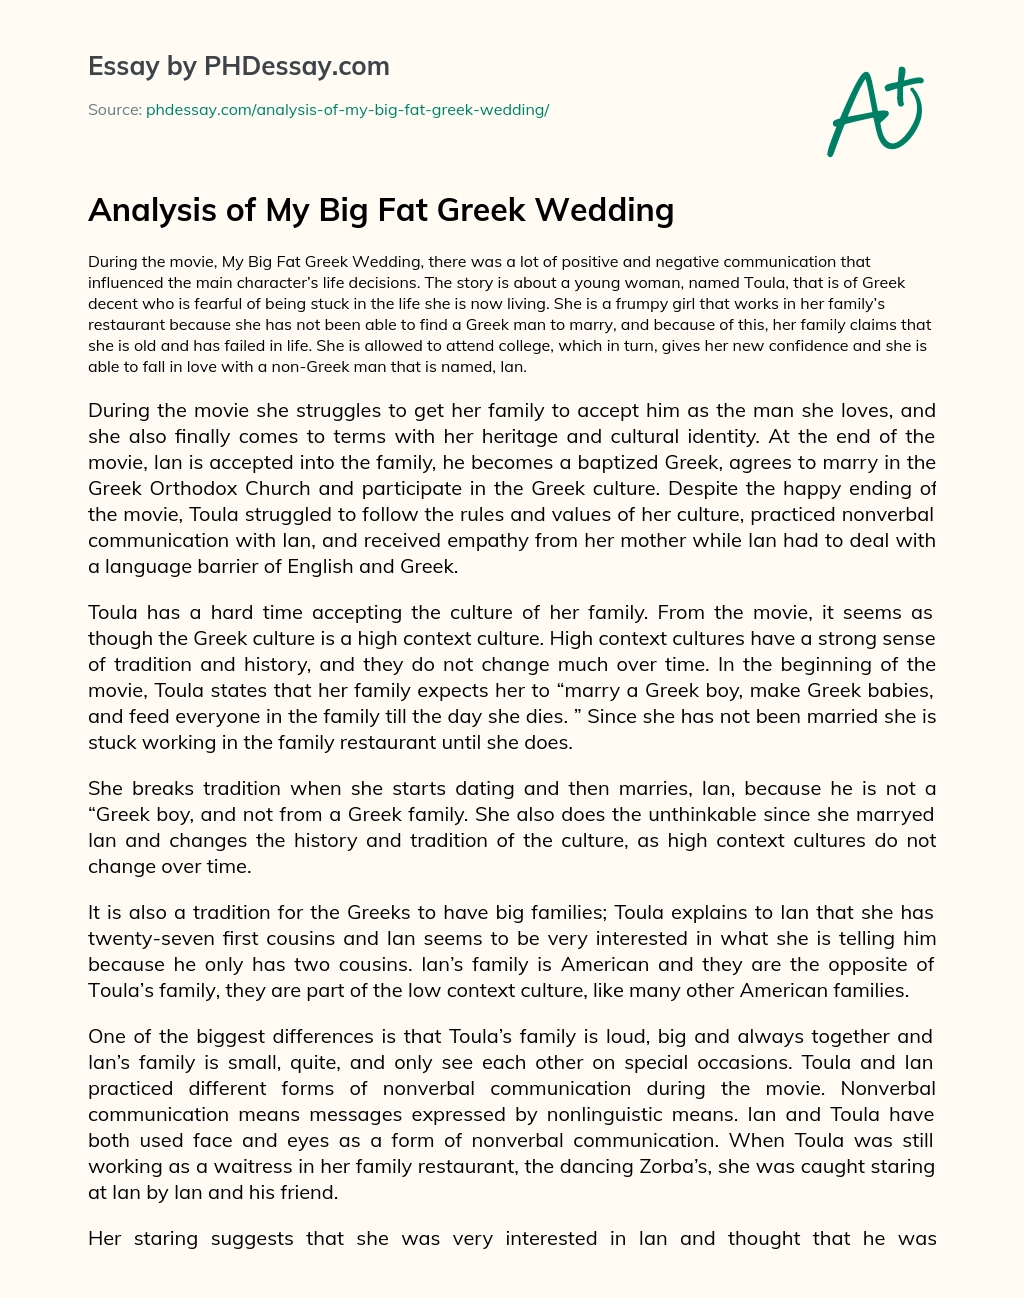 Analysis of My Big Fat Greek Wedding essay